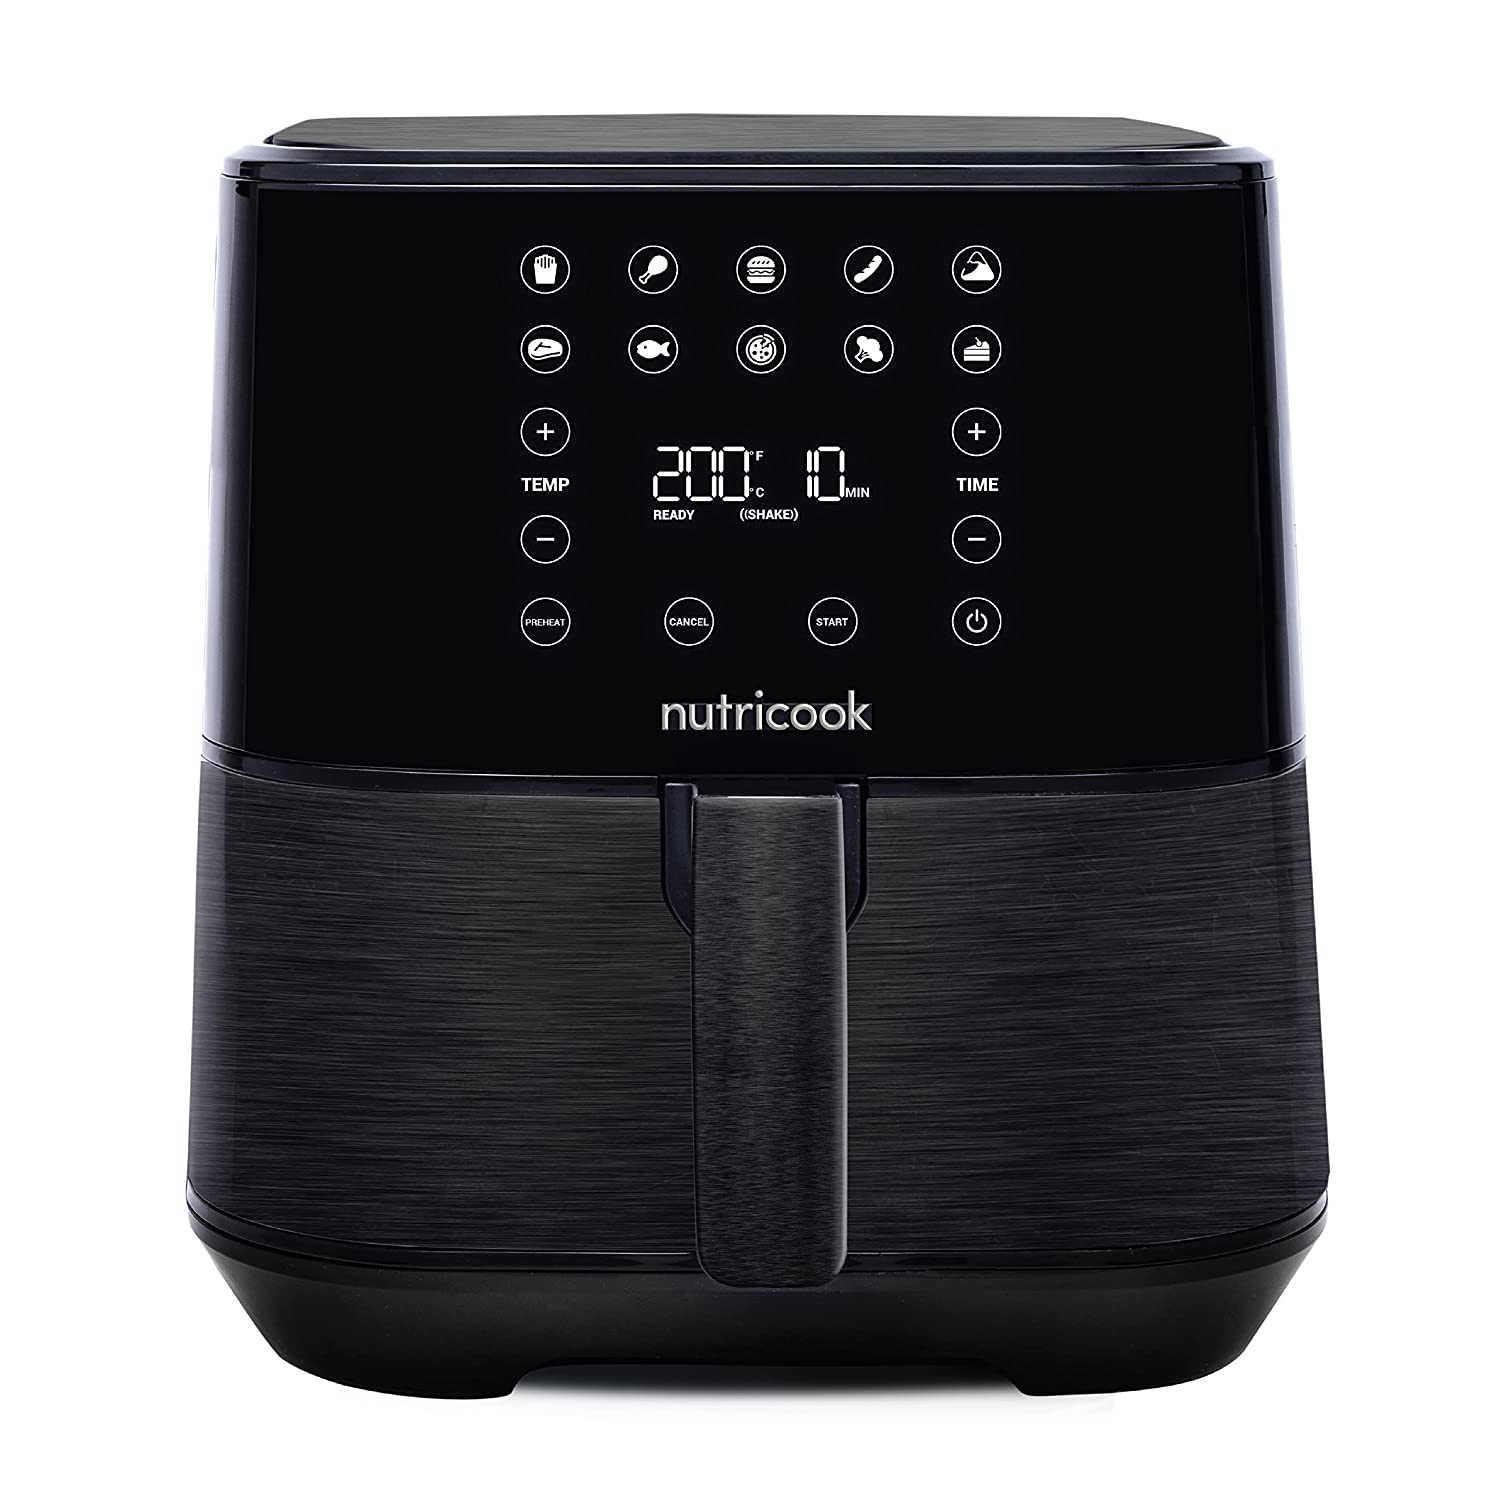 Nutricook AirFryer 2, 1700 Watts, Digital Control Panel Display